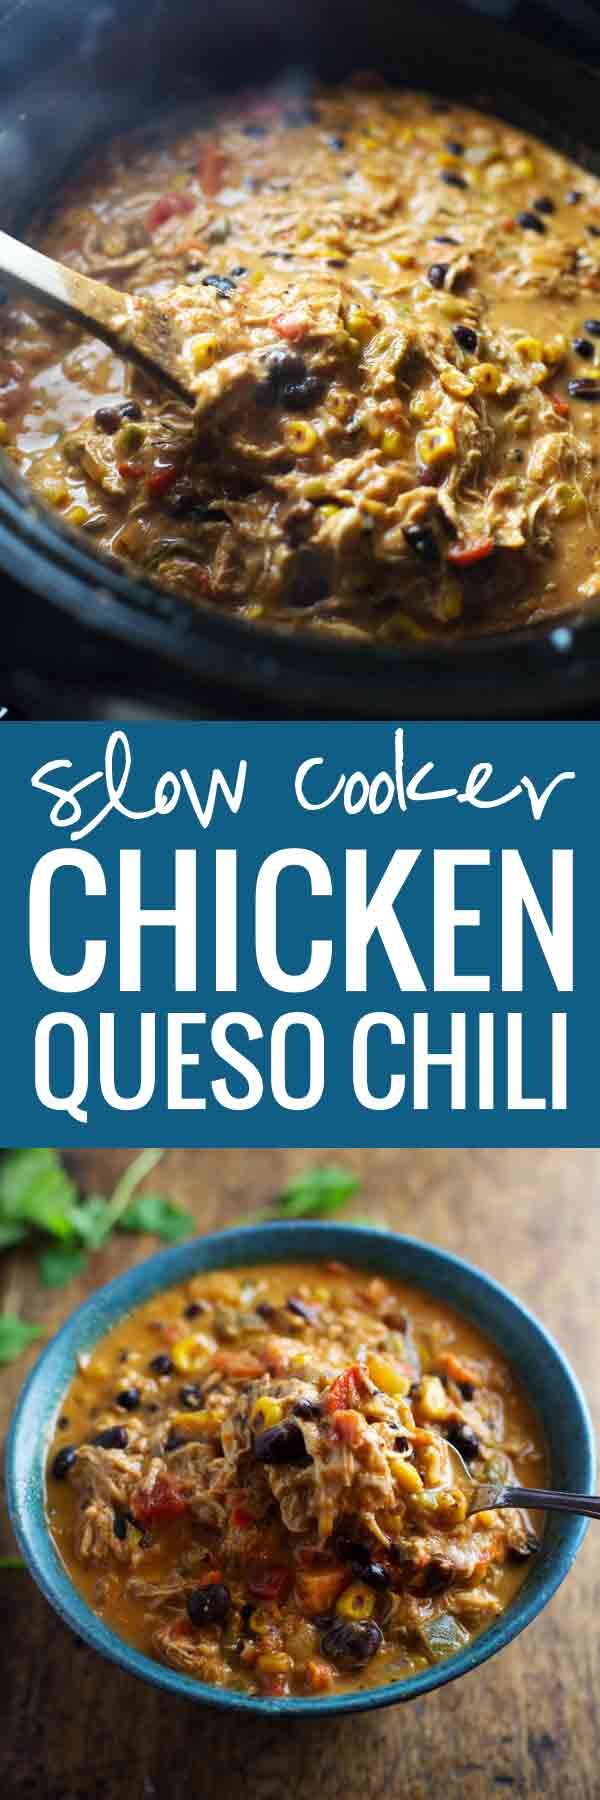 Crockpot Queso Chicken Chili